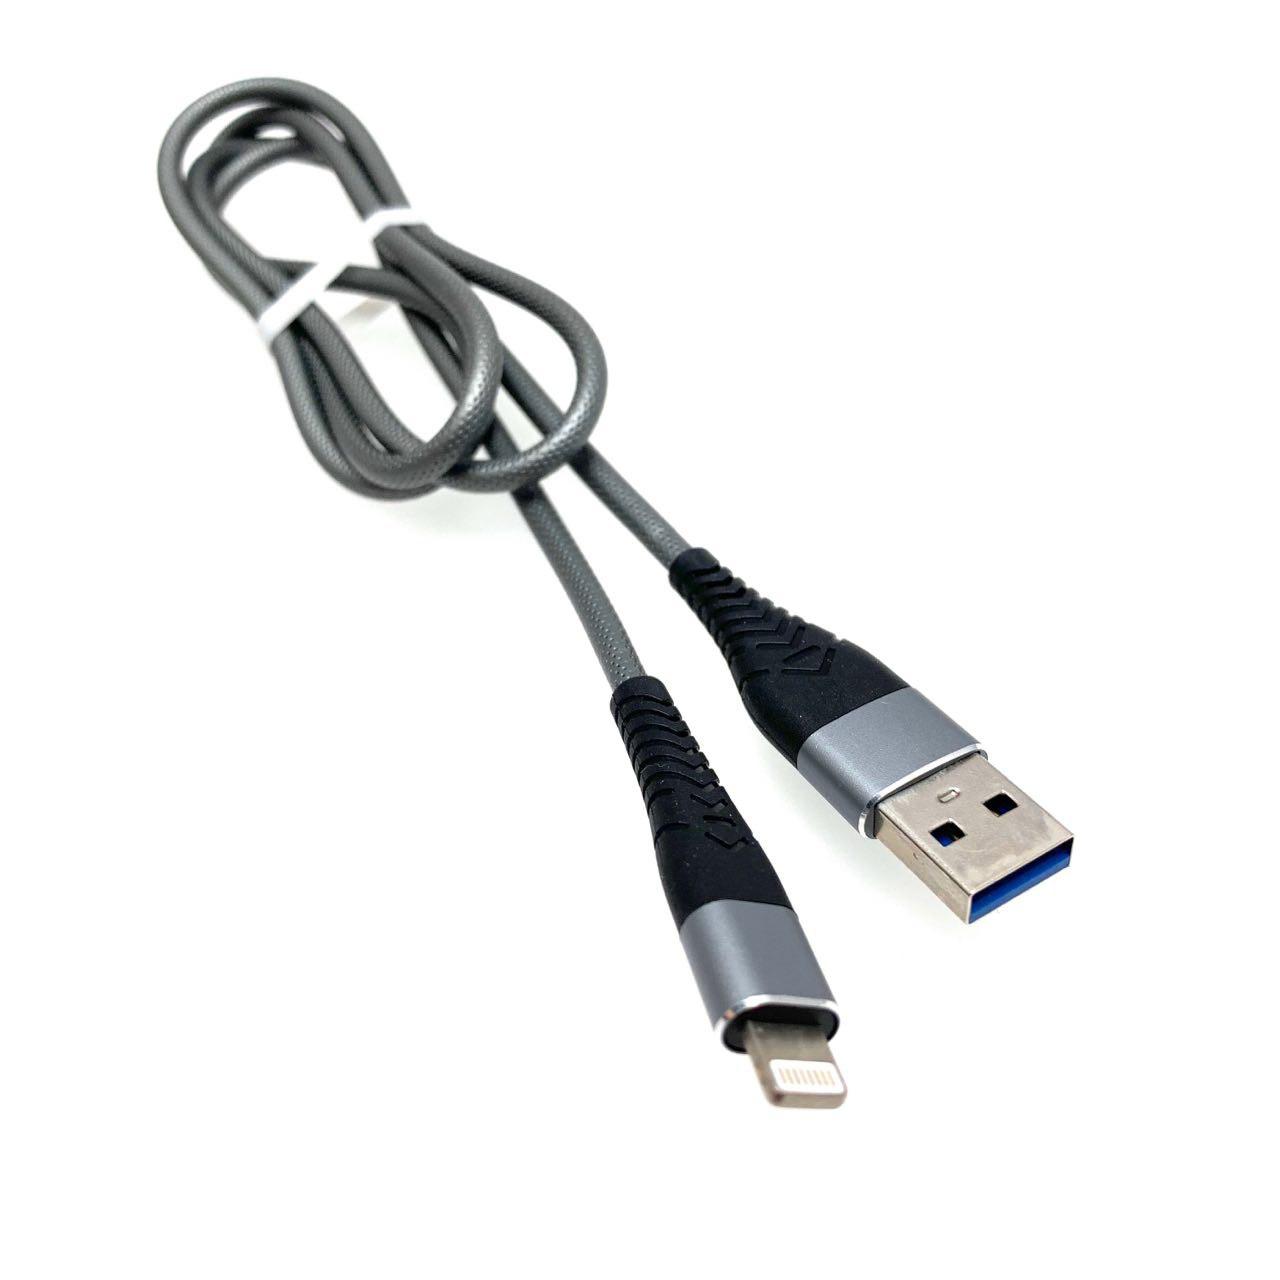 USB Дата-кабель "R18" APPLE Lightning 8-pin силиконовый эластичный, морозоустойчивый, 1 метр серебристого цвета, синие контакты.